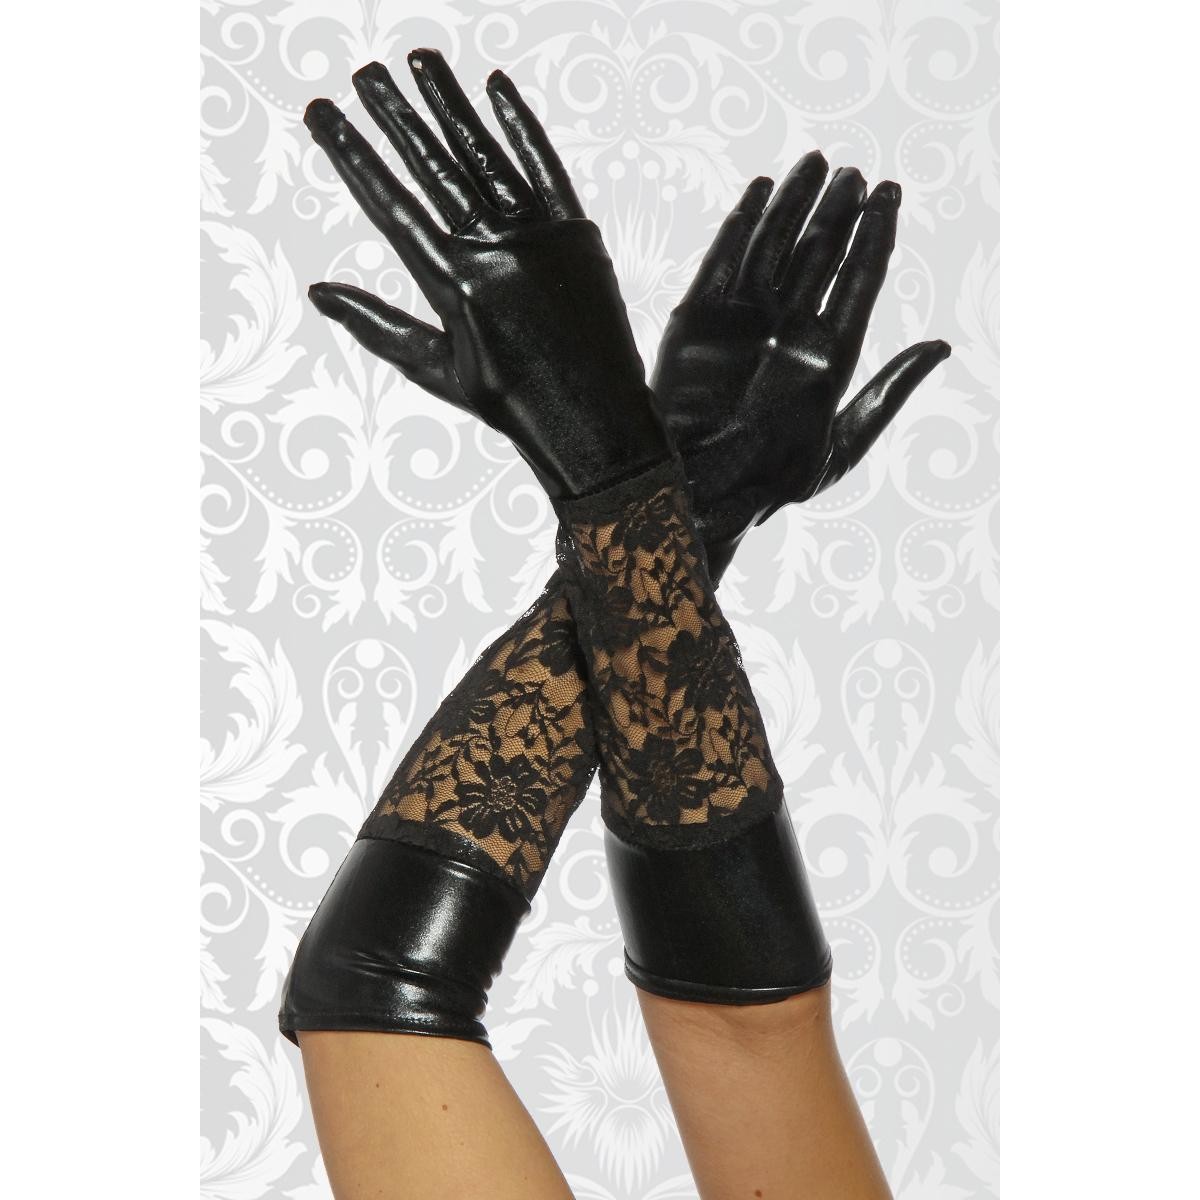  Beautys  Love  -  Wetlook-Handschuhe  mit  Spitze  -  schwarz 